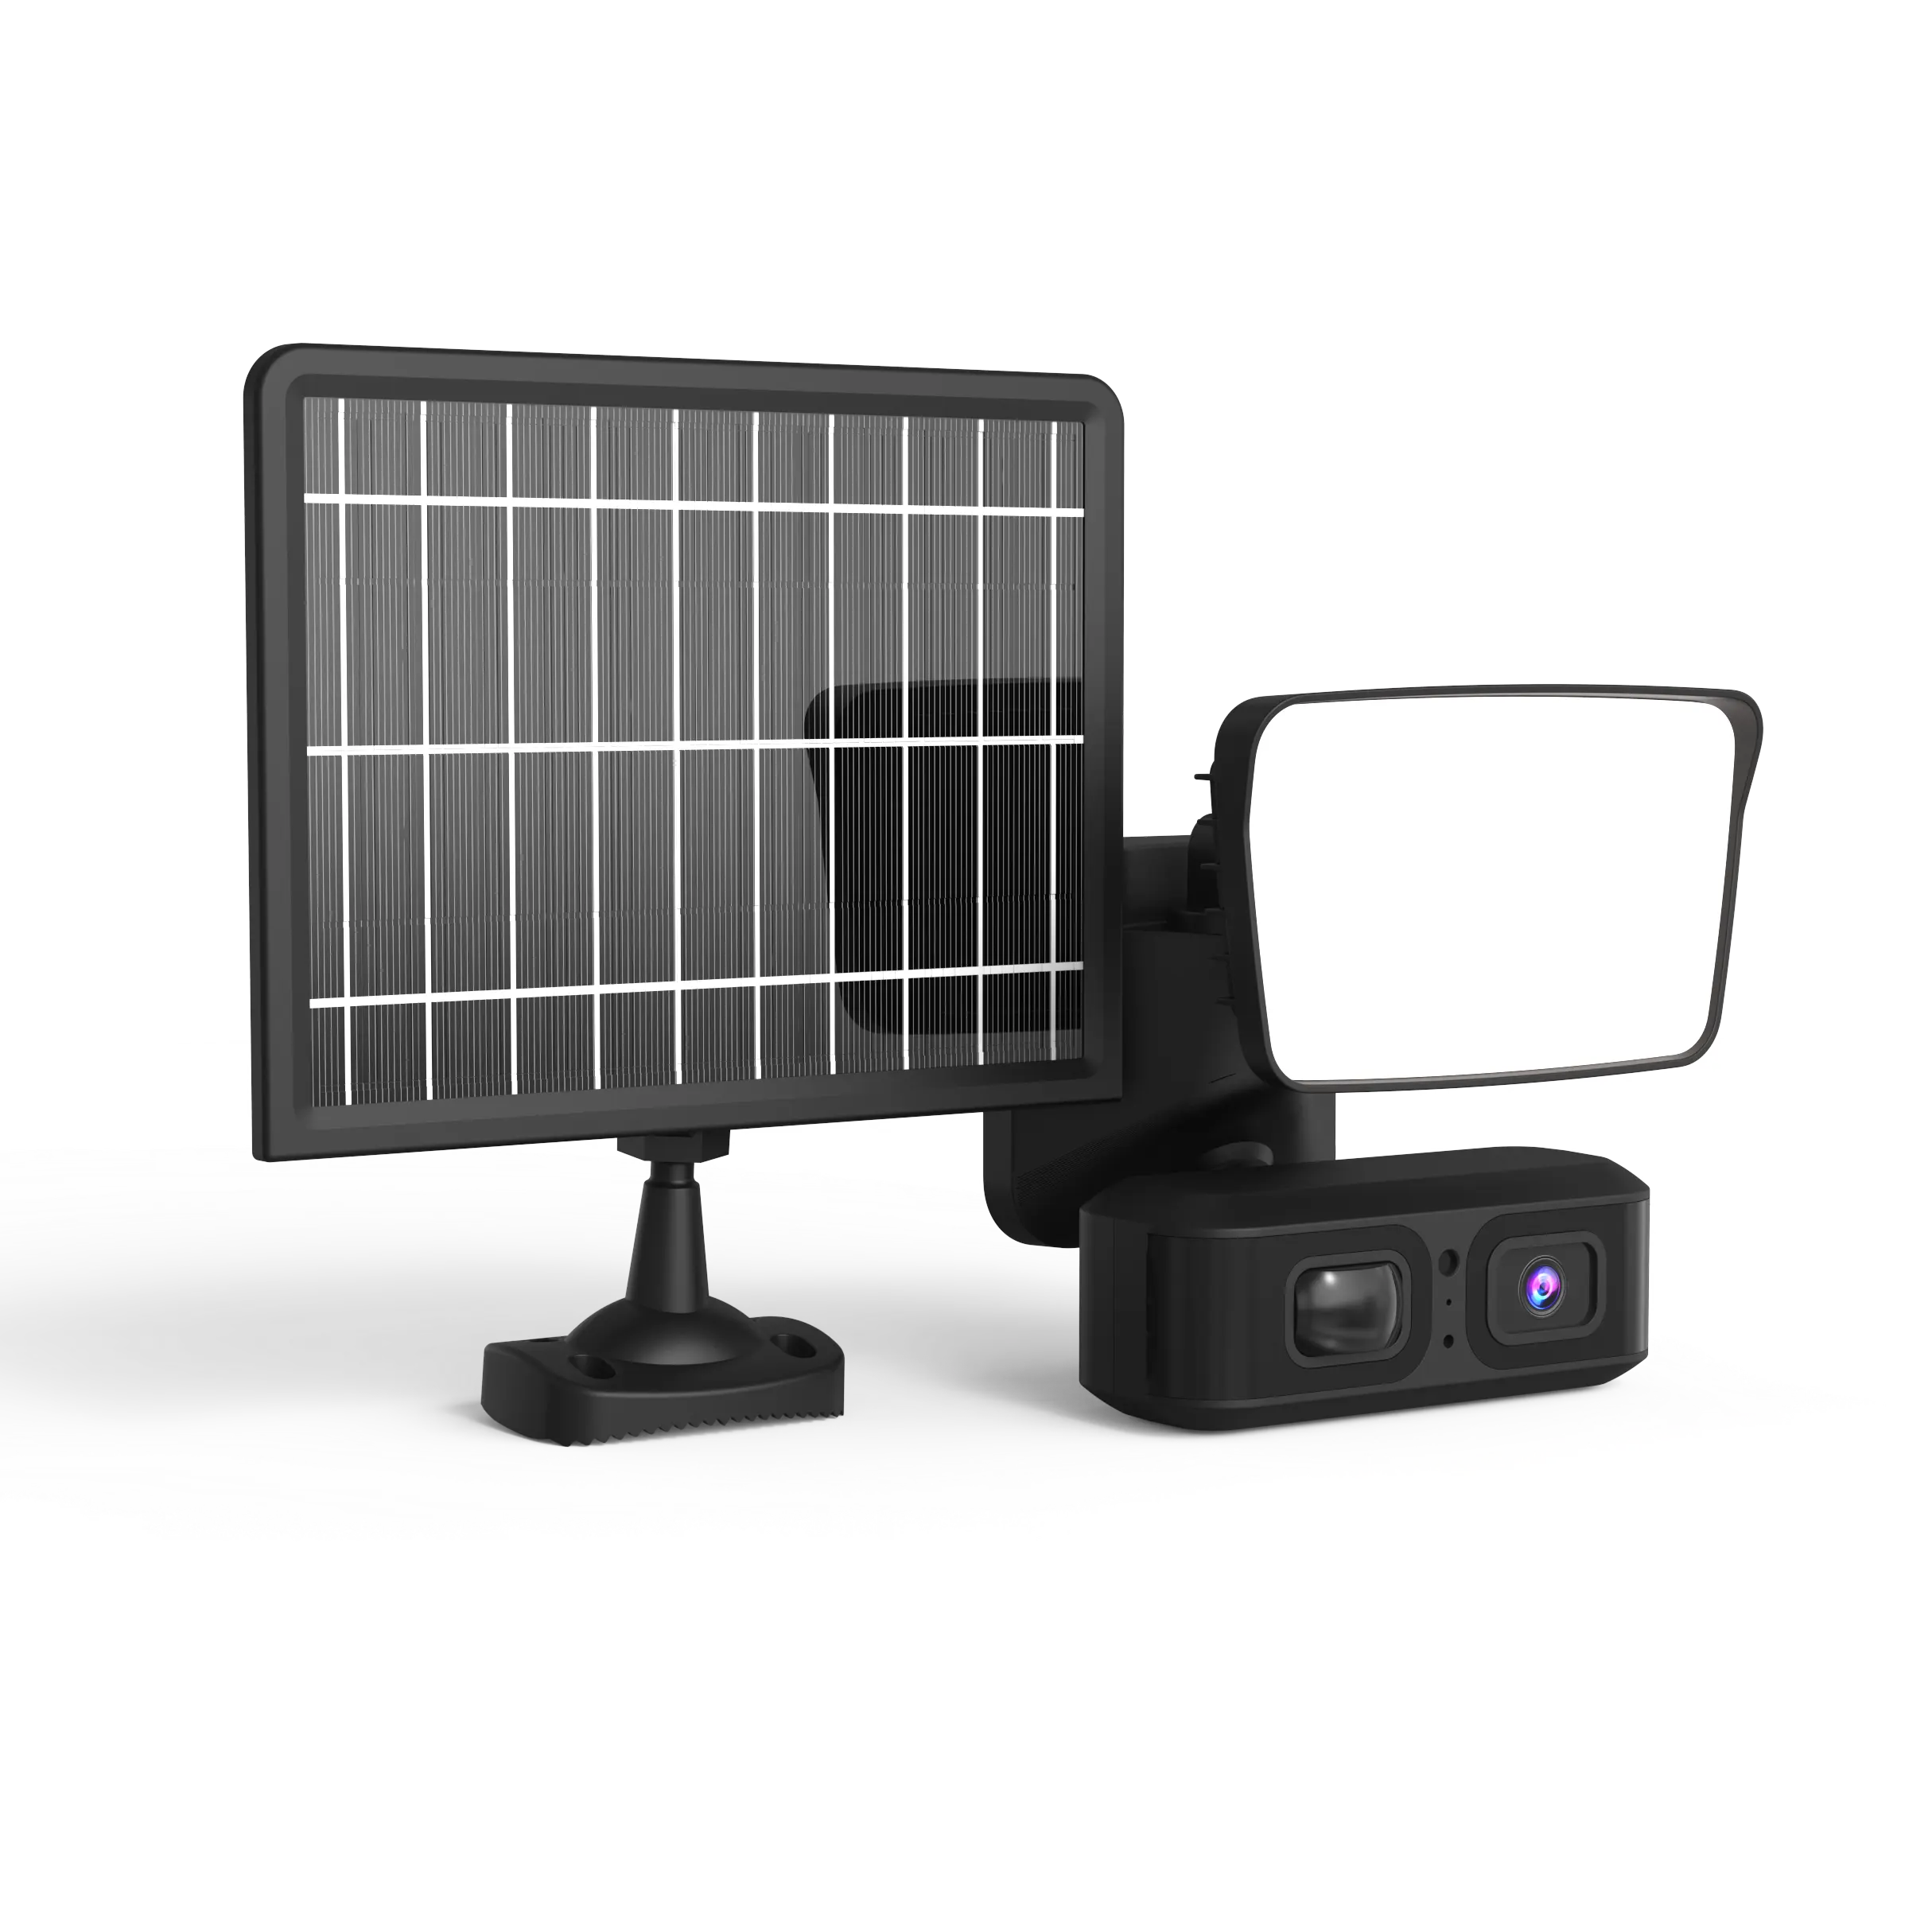 بطاريات UBOX منخفضة الطاقة 3 ميجا بكسل, بطاريات UBOX منخفضة الطاقة 3MP 12000 واط بطاريات مللي أمبير في الساعة في الحديقة كاشف ضوء لاسلكي كامارا 4G بطاقة Sim PTZ الشمسية